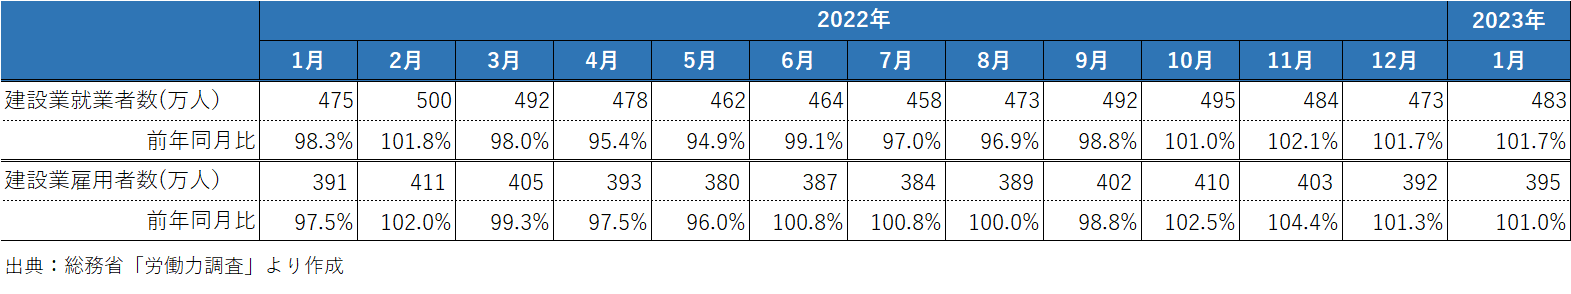 202303_1_建設業の就業者数と雇用者数の推移